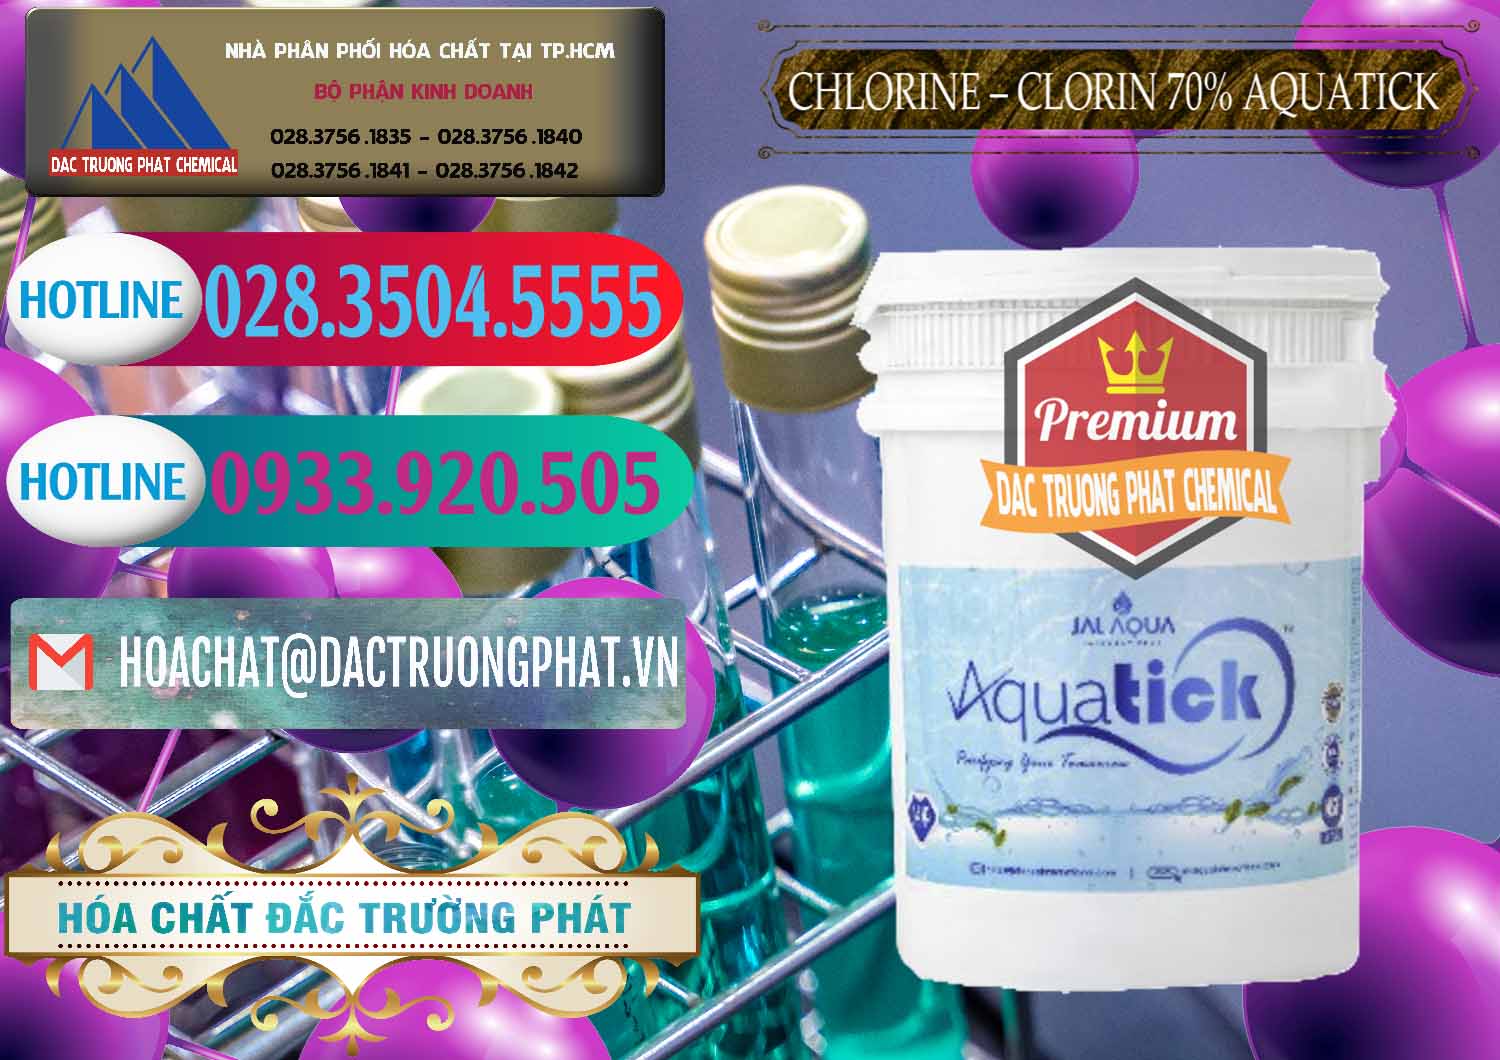 Đơn vị phân phối ( bán ) Chlorine – Clorin 70% Aquatick Thùng Cao Jal Aqua Ấn Độ India - 0237 - Công ty chuyên phân phối ( bán ) hóa chất tại TP.HCM - truongphat.vn